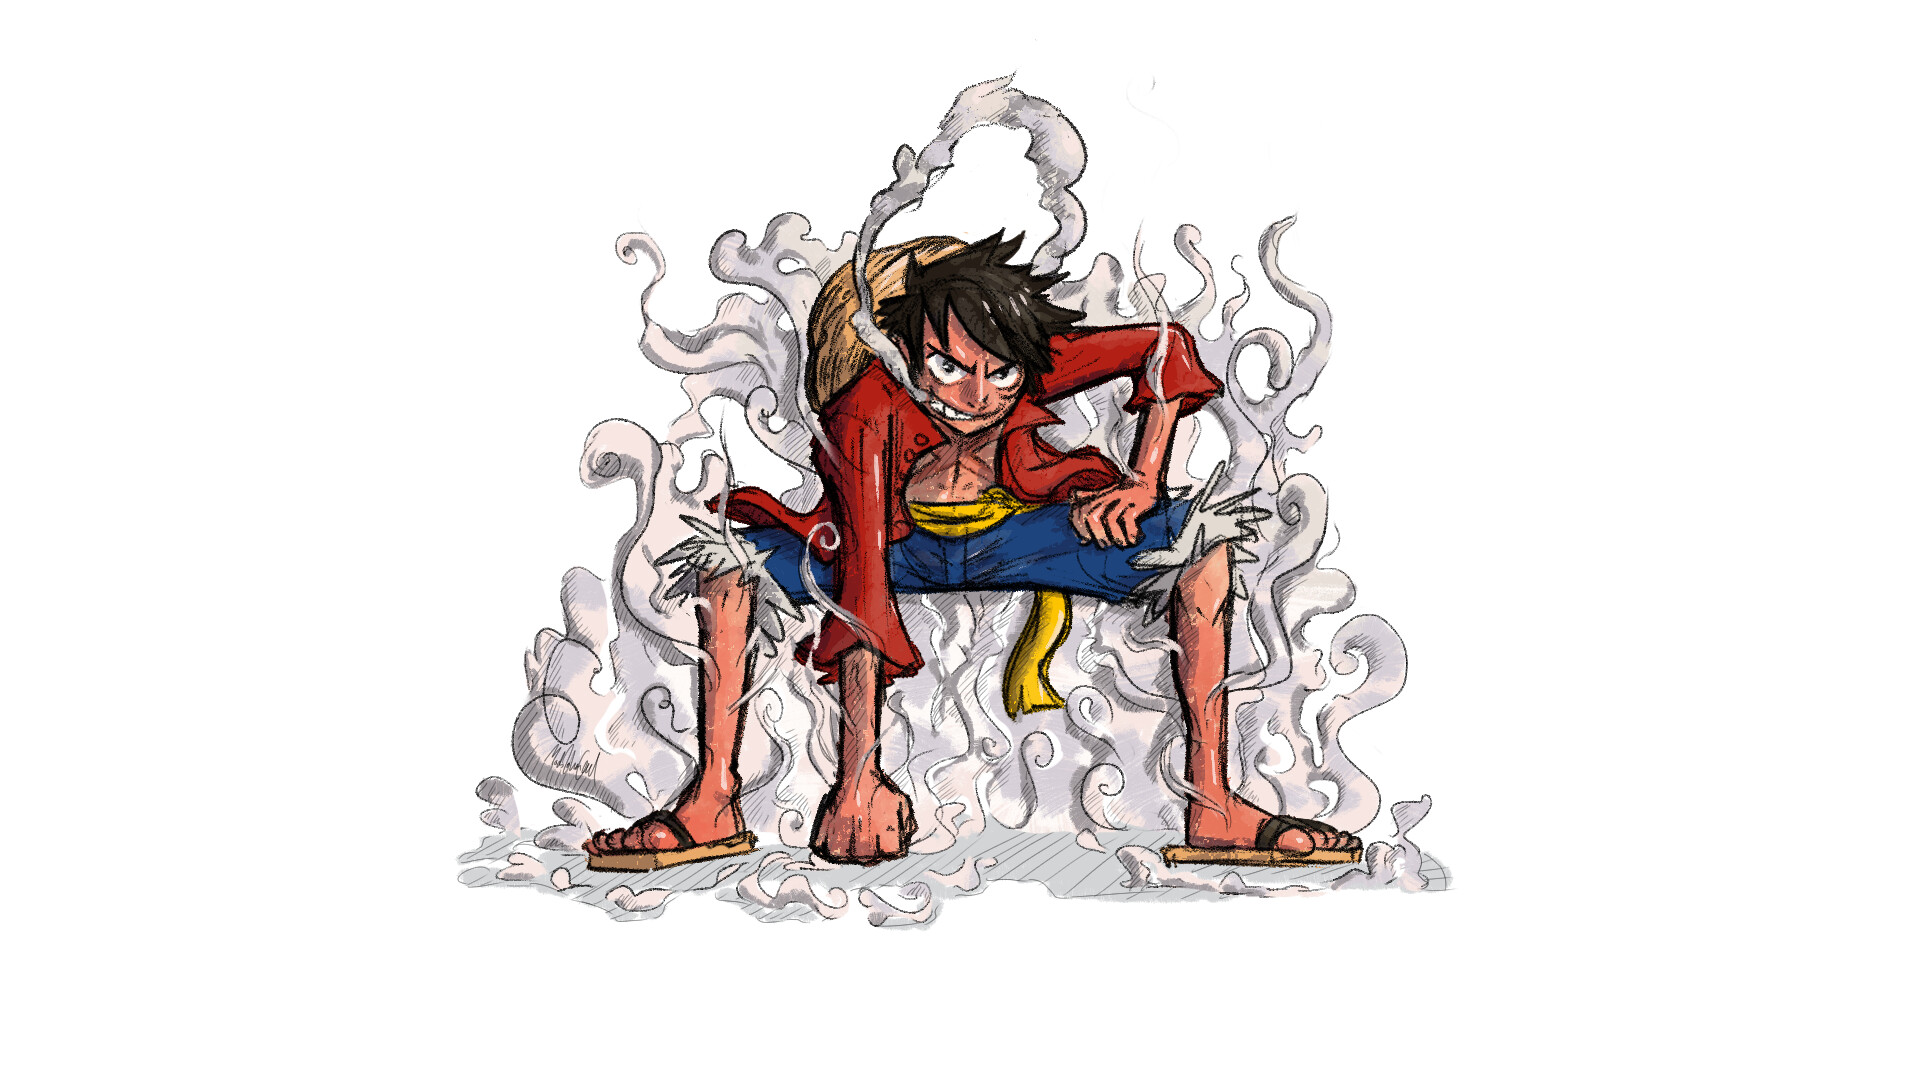 Tranh Luffy với Gear 2 sẽ đưa bạn đến với thế giới của One Piece, nơi mà sức mạnh quyết định mọi thứ! Tác phẩm nghệ thuật này sẽ giúp bạn chìm đắm trong cảm giác đầy mãnh liệt và hào hùng của nhân vật.